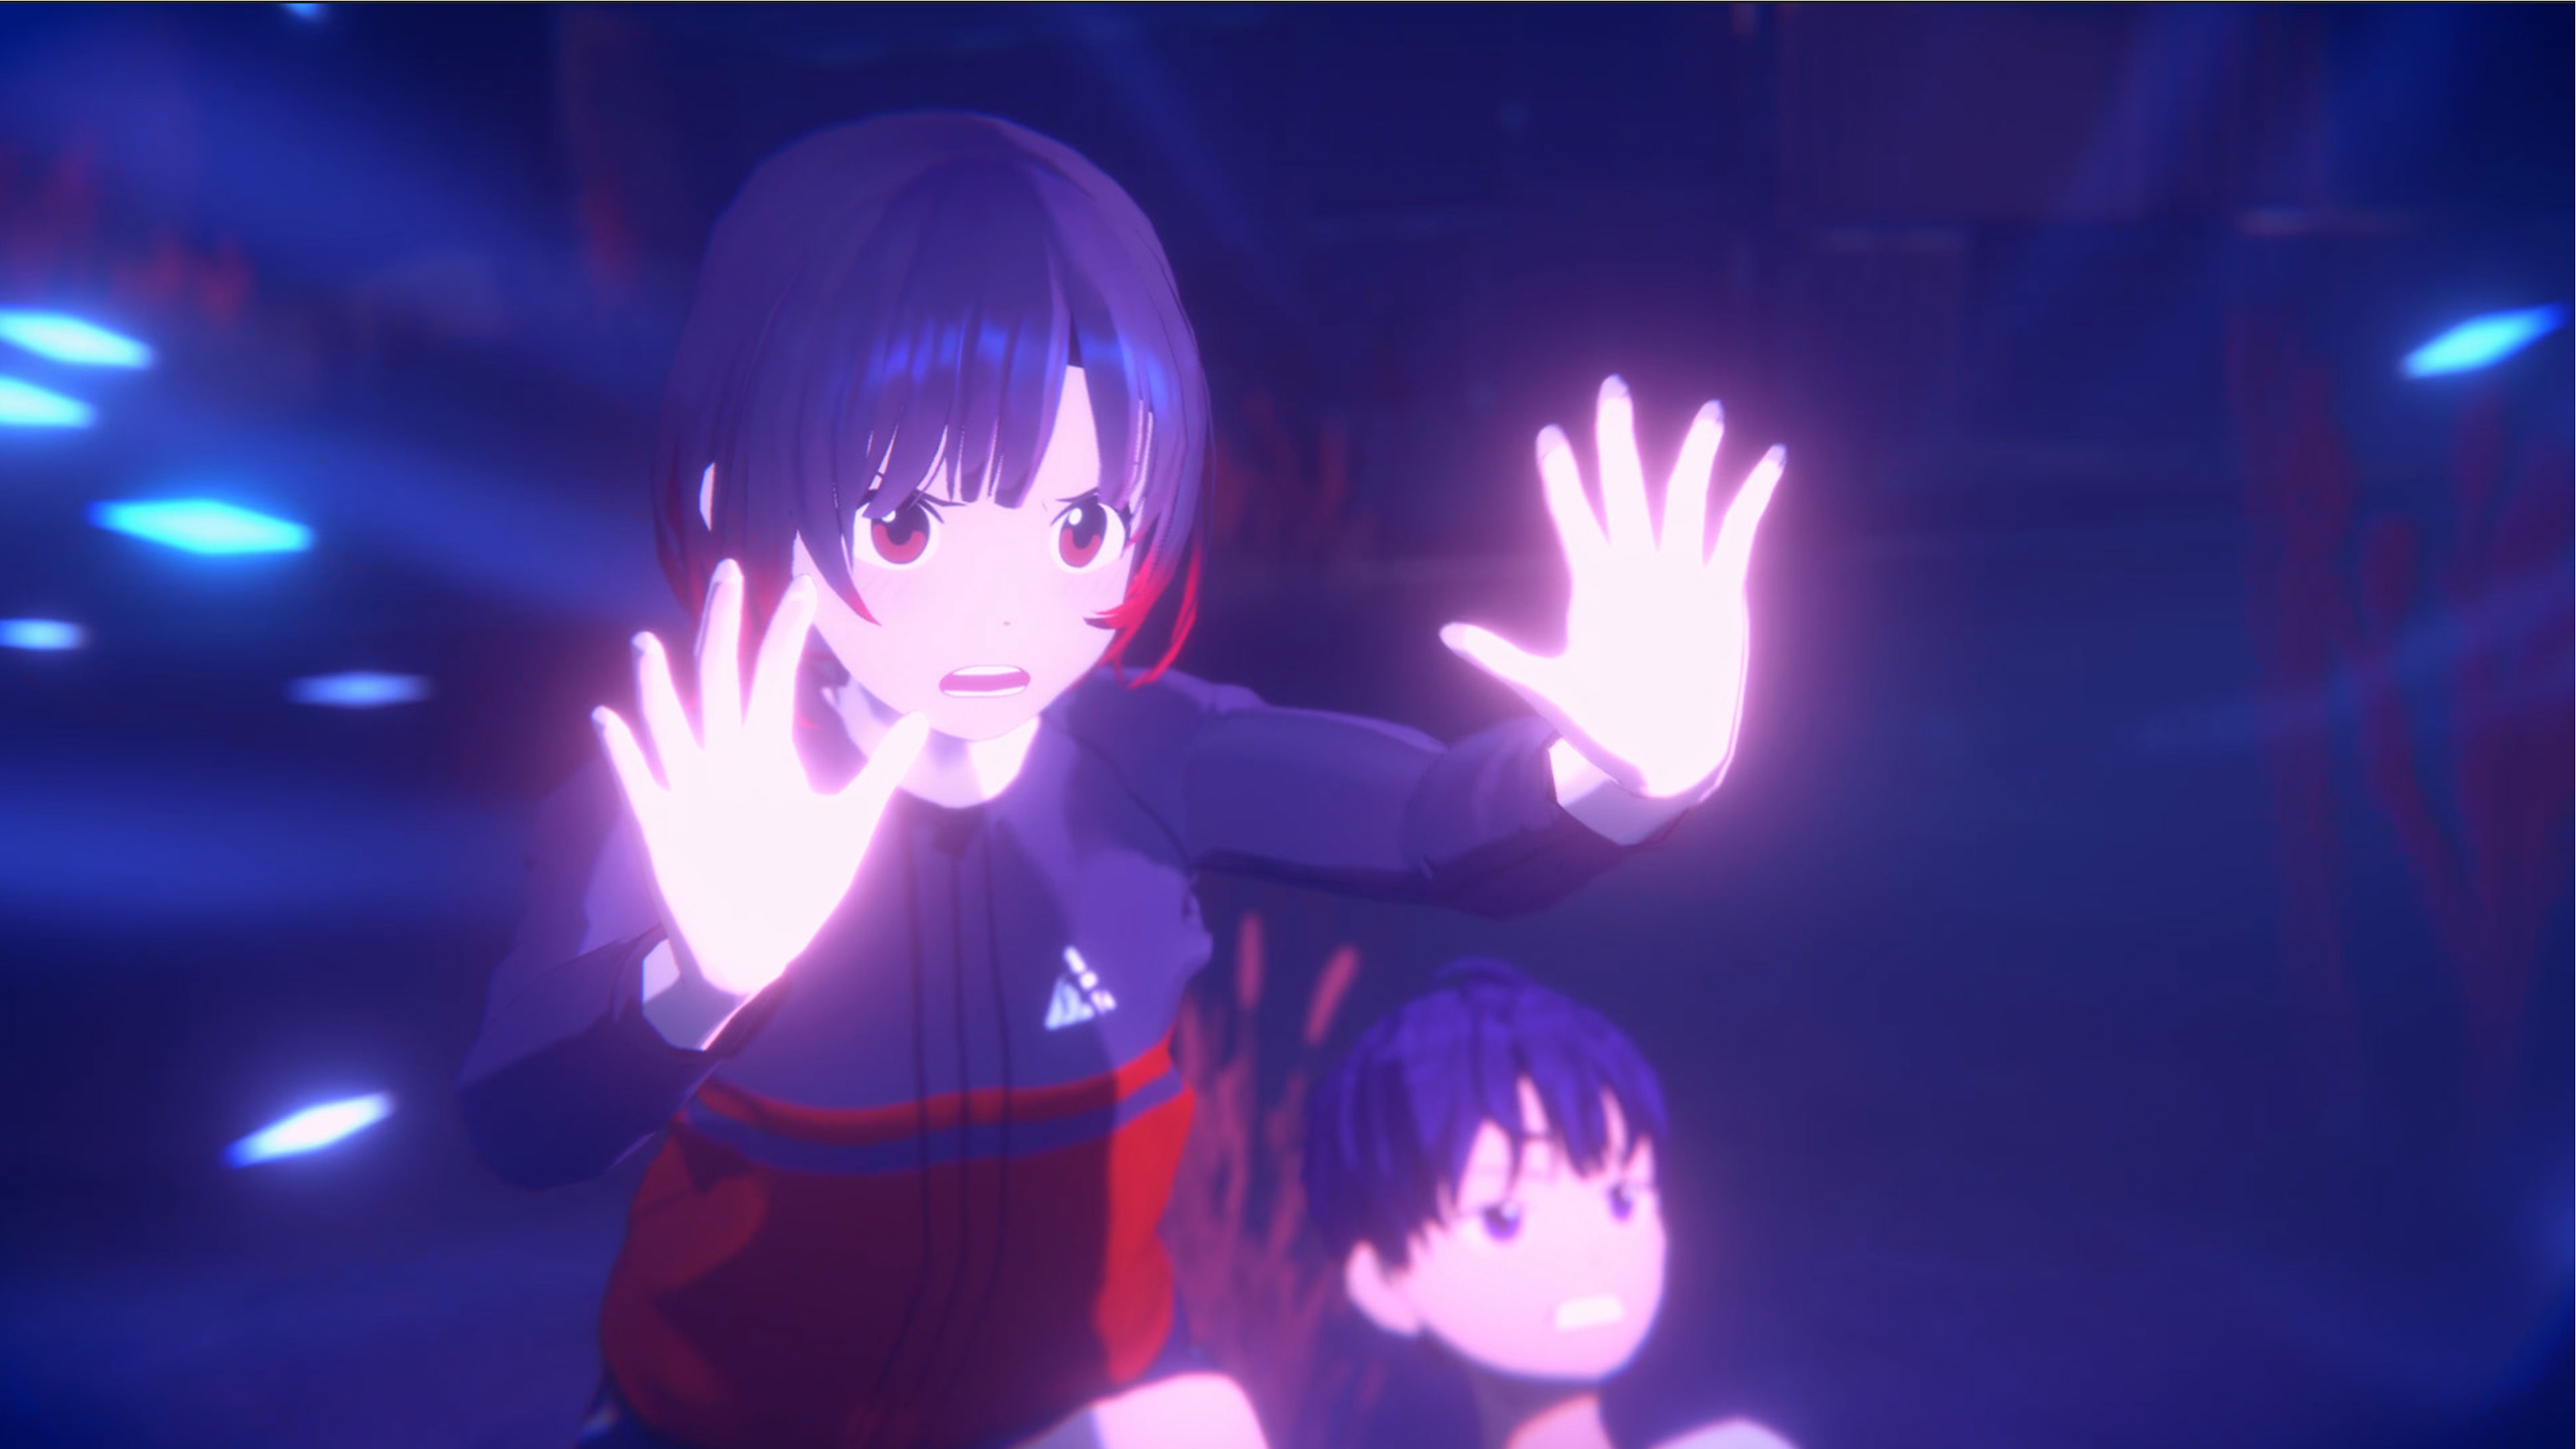 Eternights - Capture d'écran montrant une lycéenne repousser un adversaire caché.